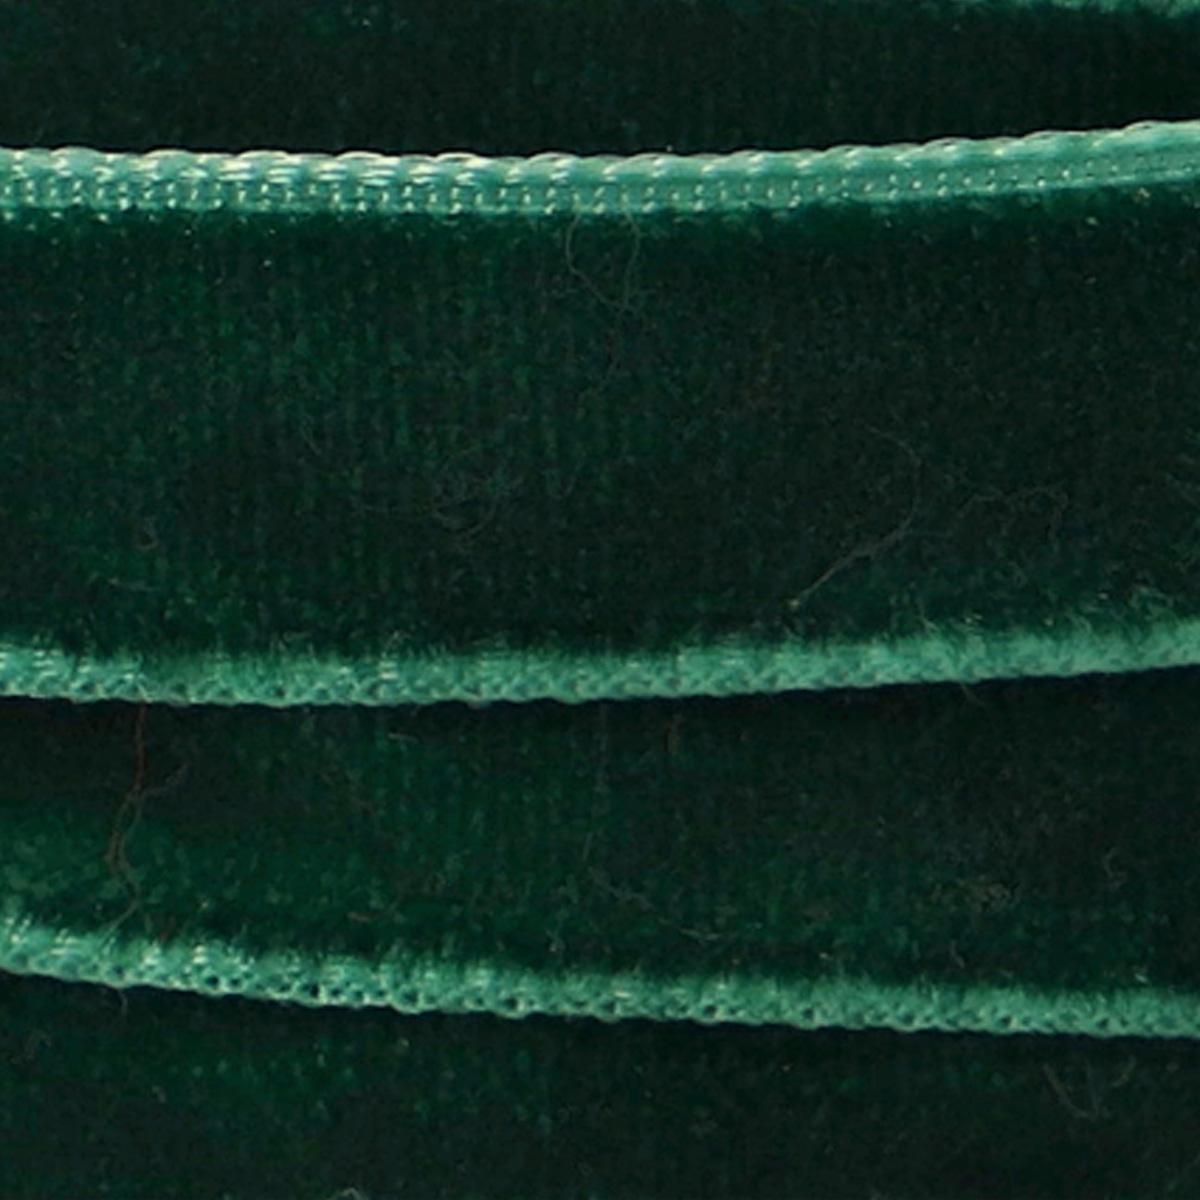 Green velvet ribbon